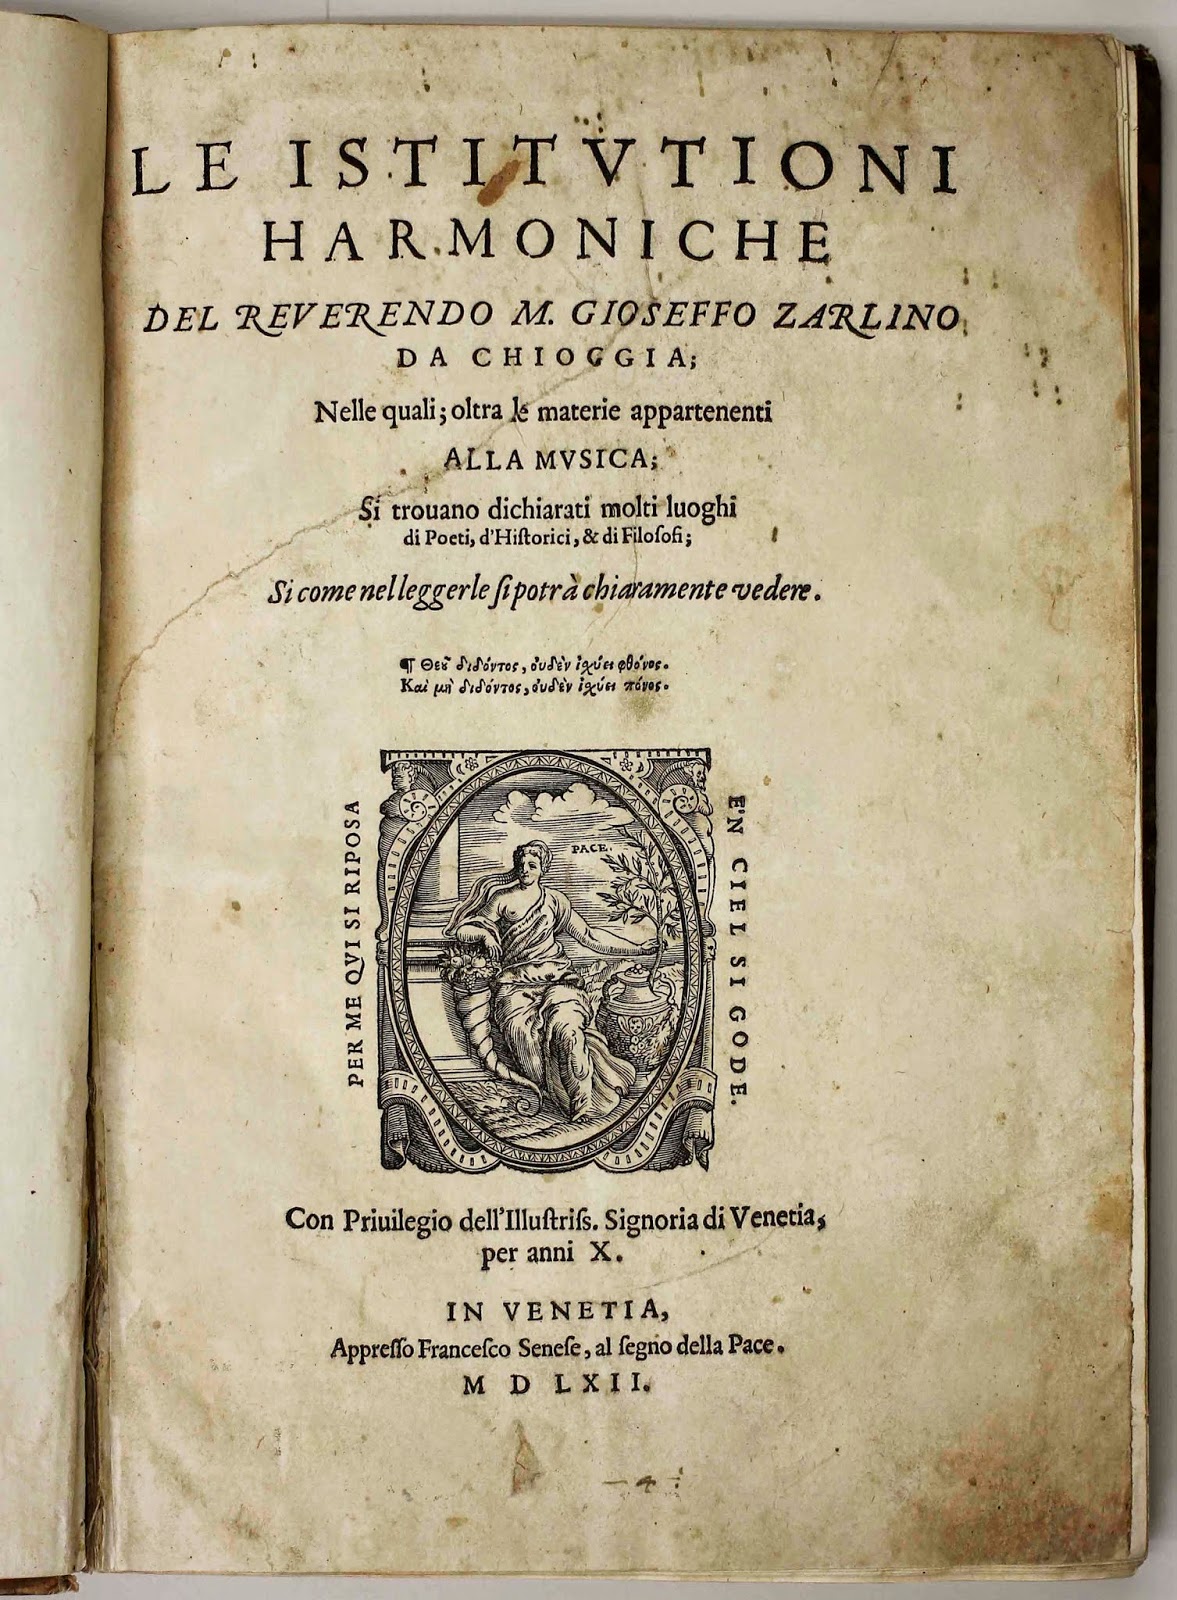 title page of Le Istitutioni Harmoniche by Gioseffo Zarlino